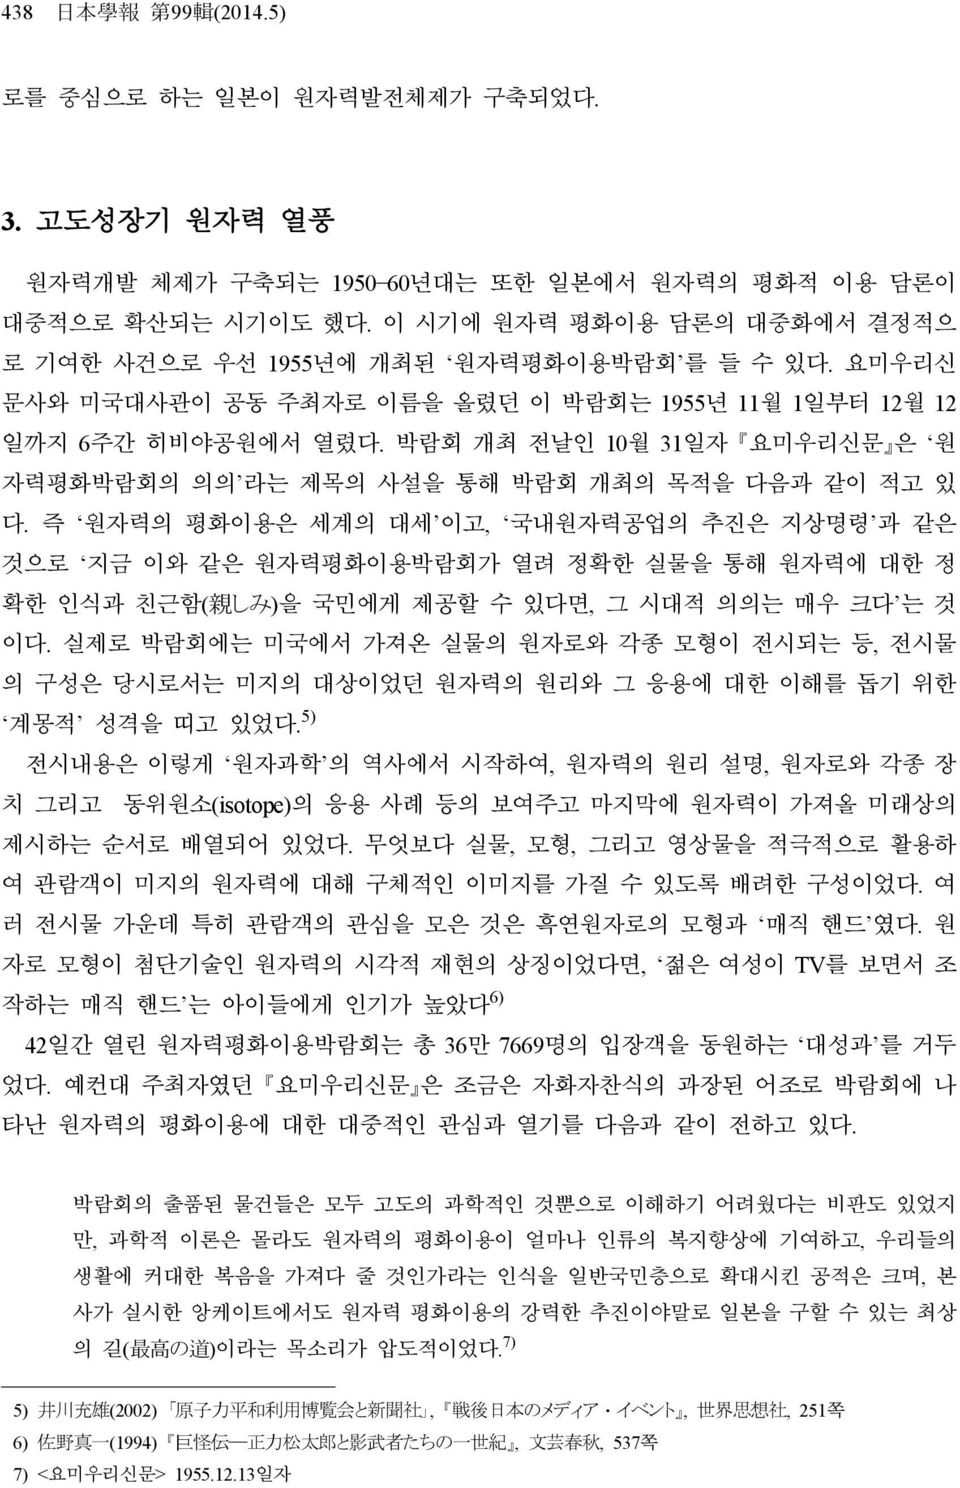 박람회 개최 전날인 10월 31일자 요미우리신문 은 원 자력평화박람회의 의의 라는 제목의 사설을 통해 박람회 개최의 목적을 다음과 같이 적고 있 다.